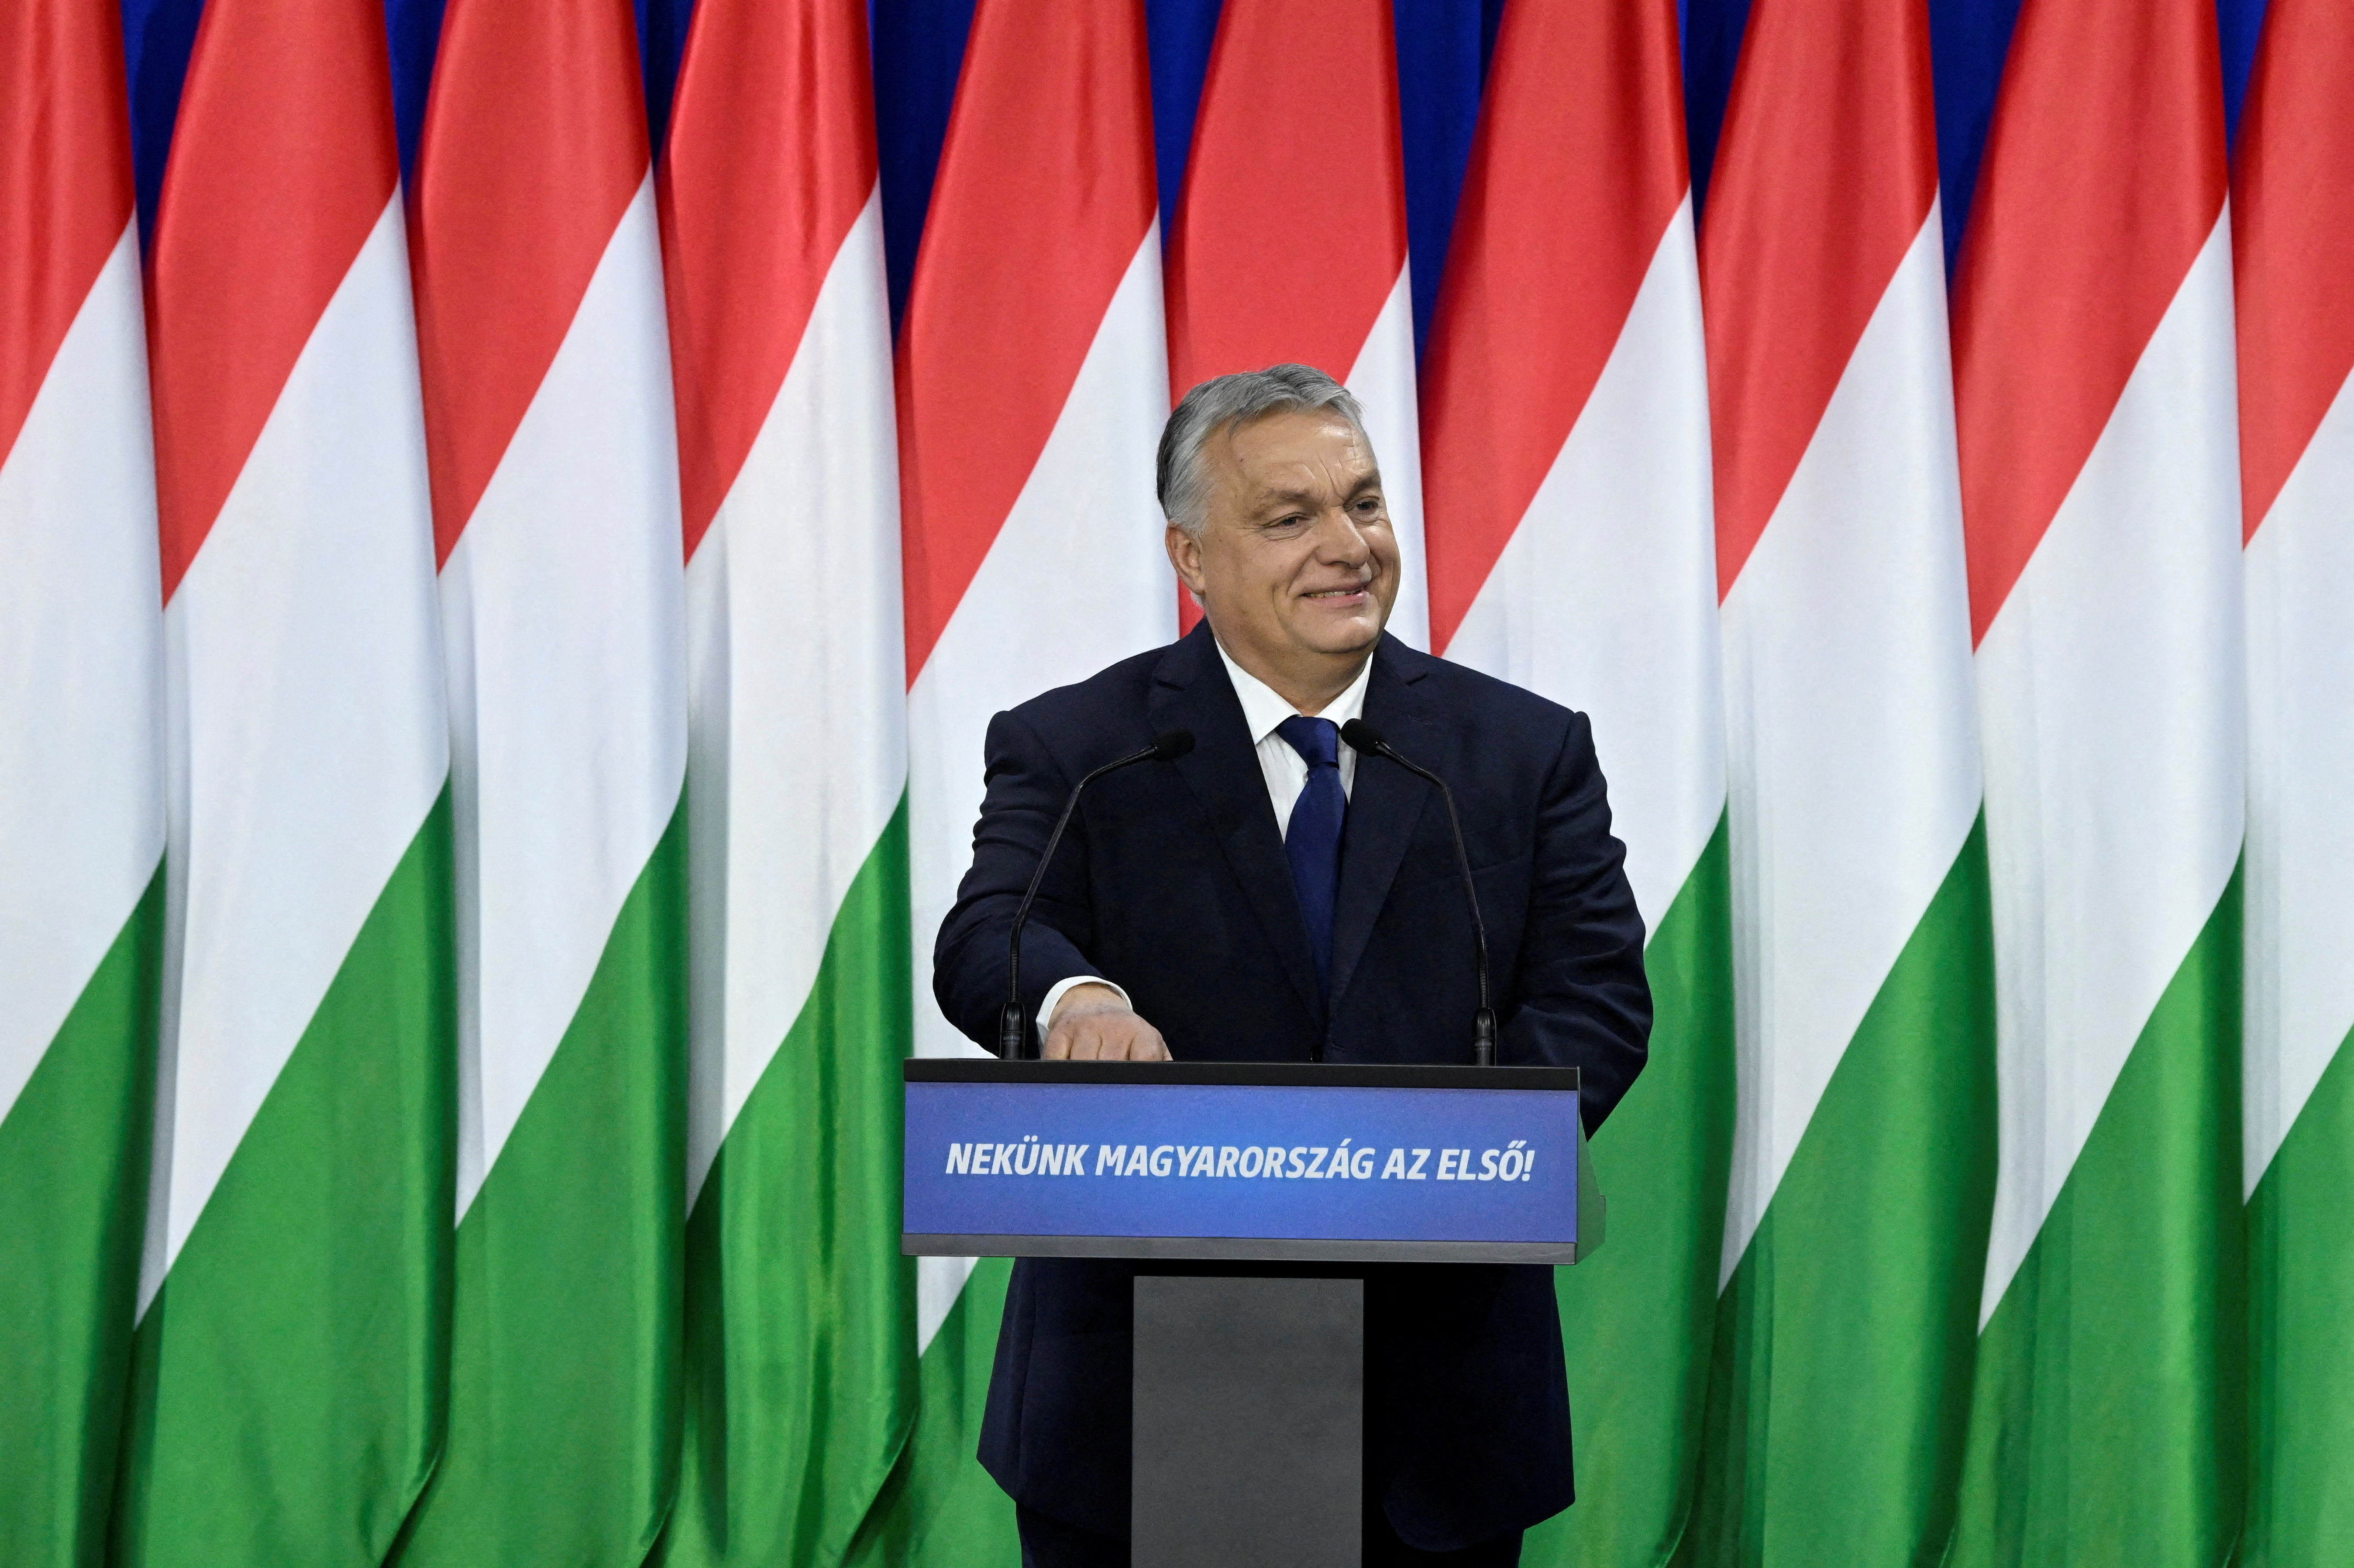 Inquiétude de Bruxelles sur la présidence hongroise du Conseil de l'Union européenne